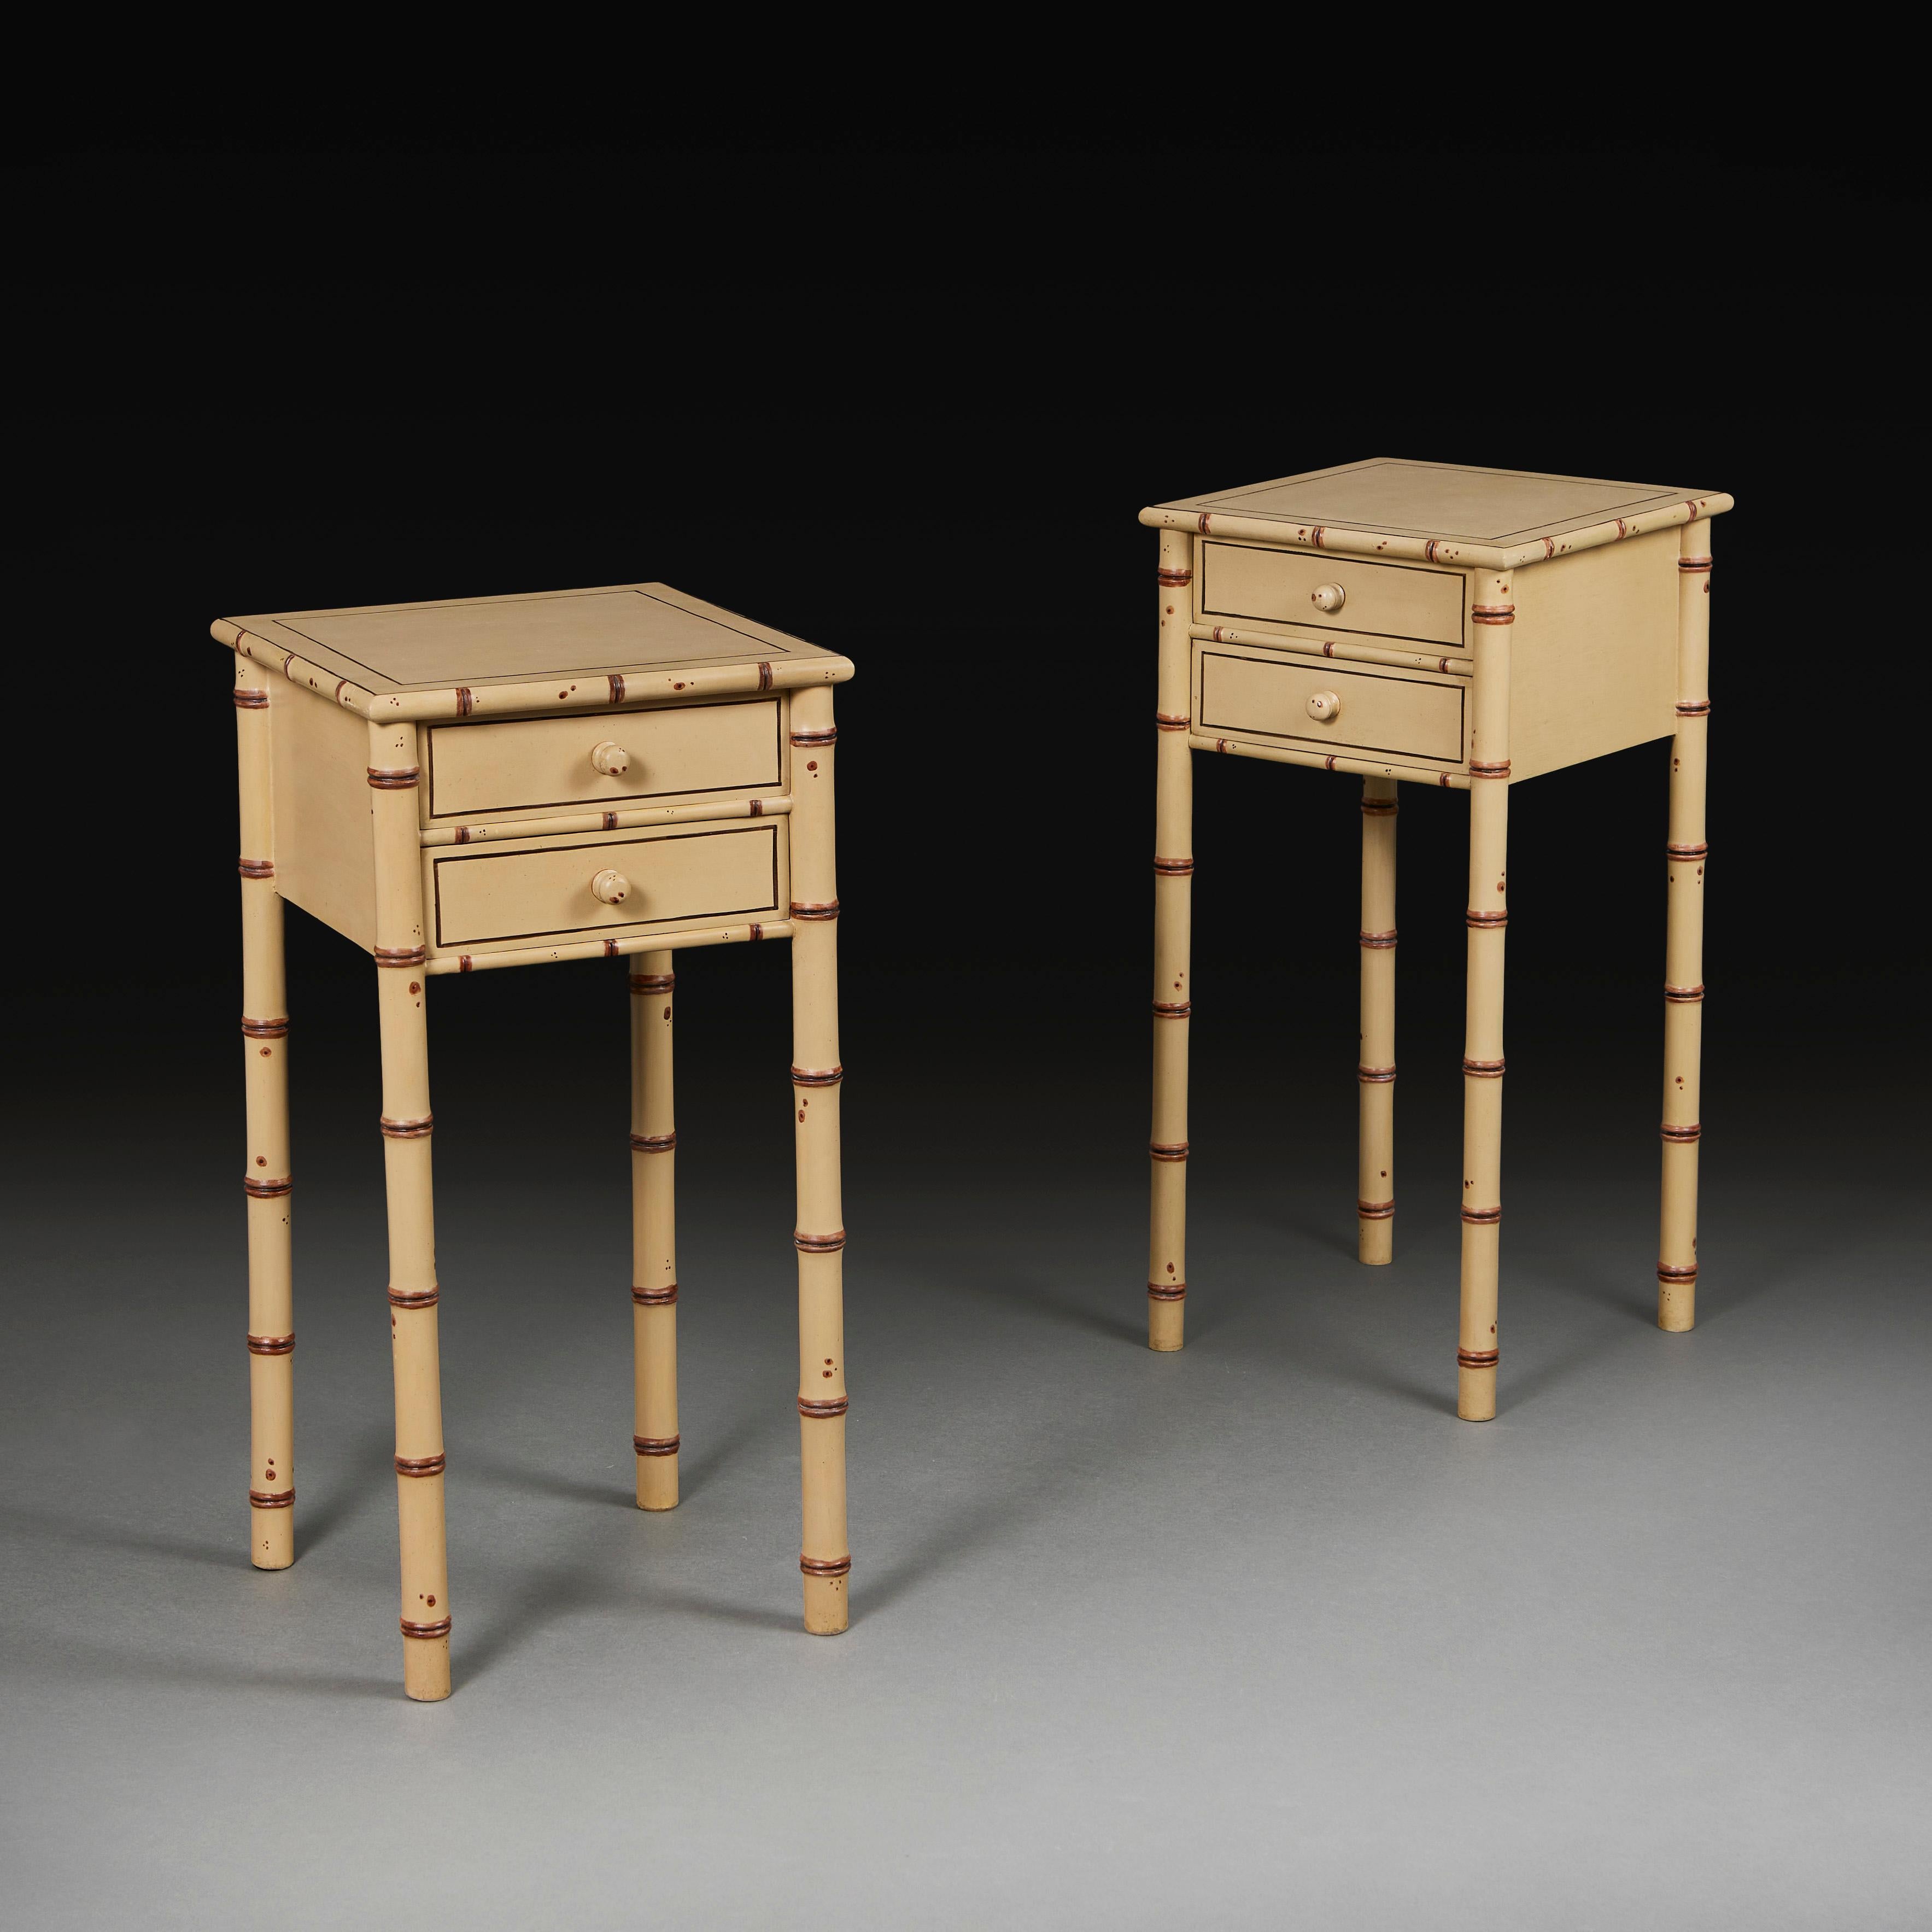 Paire de tables de chevet édouardiennes en faux bambou peint, peintes en crème et brun pour simuler le bois de bambou, de forme carrée, chacune s'ouvrant sur deux tiroirs à l'avant et reposant sur quatre pieds en bambou.